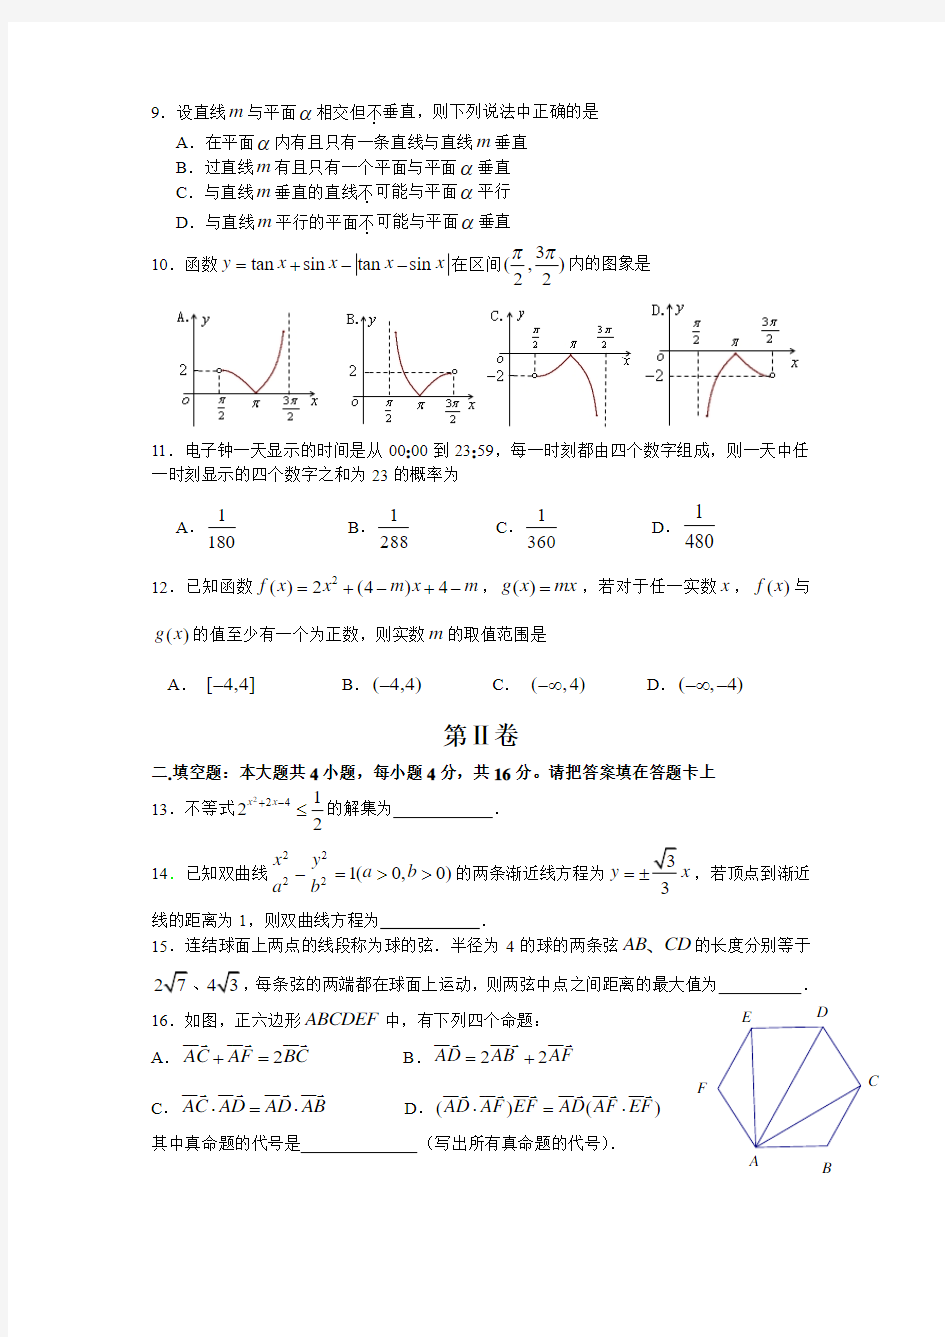 2008年高考理科数学(江西)卷